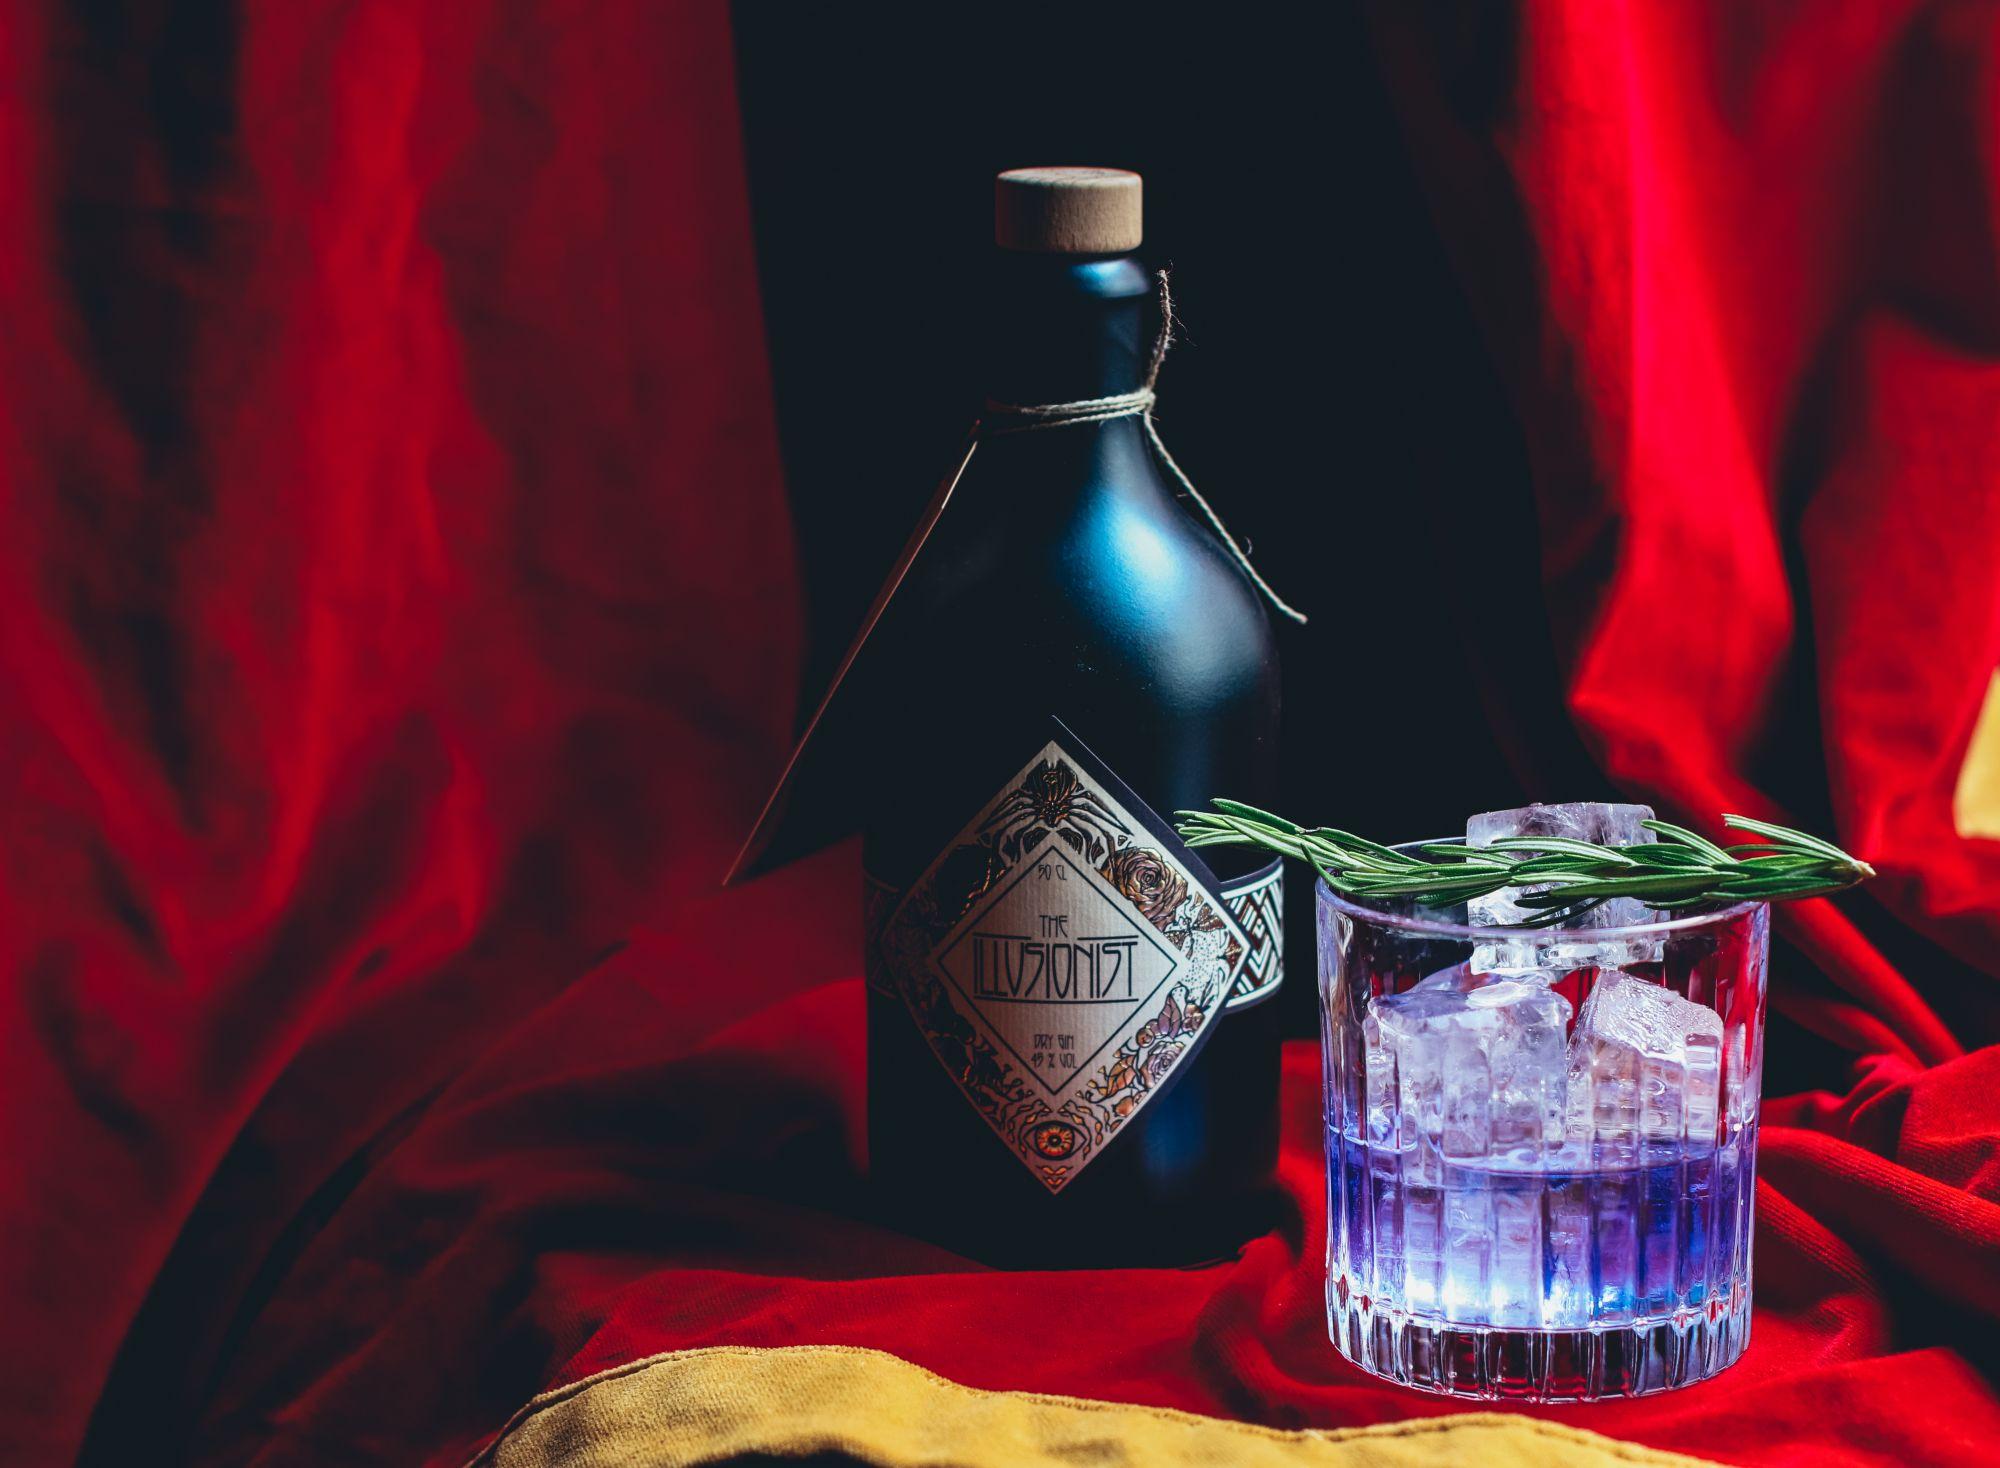 Entdecke den faszinierenden The Illusionist Dry Gin aus Bayern - mit tiefblauer Farbe und unvergleichlichem Geschmack